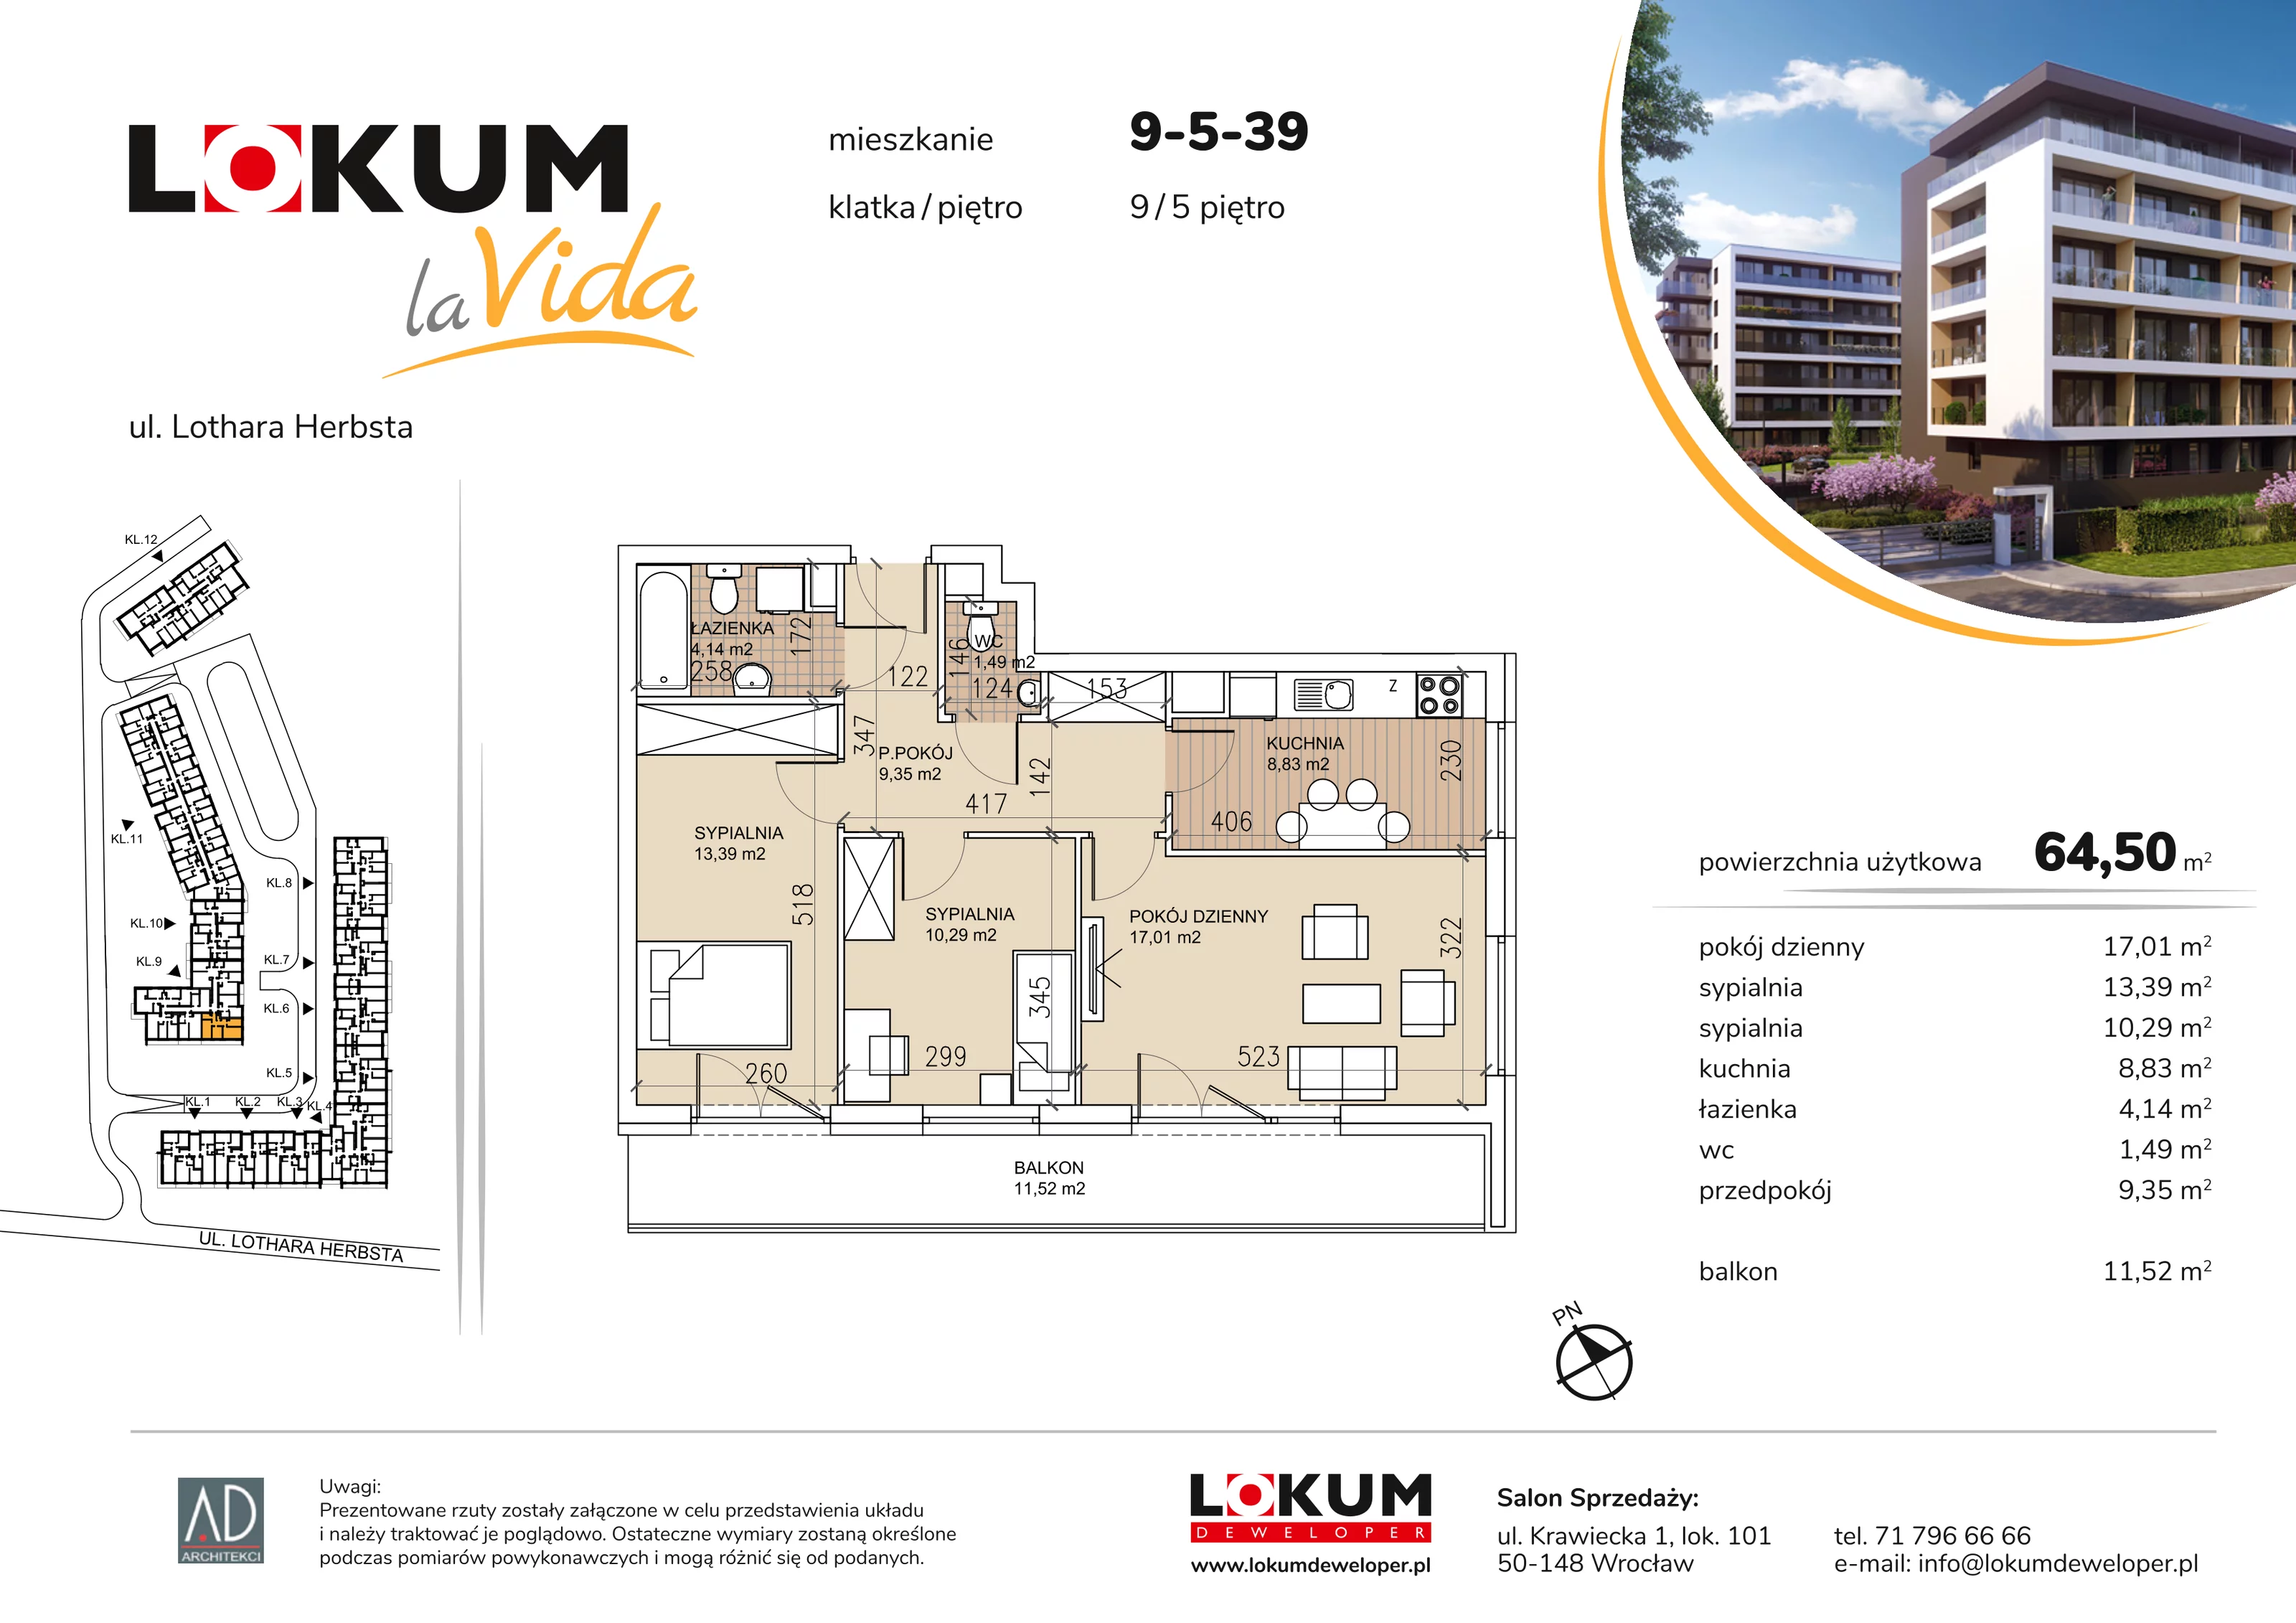 Mieszkanie 64,50 m², piętro 5, oferta nr 9-5-39, Lokum la Vida, Wrocław, Sołtysowice, ul. Lothara Herbsta